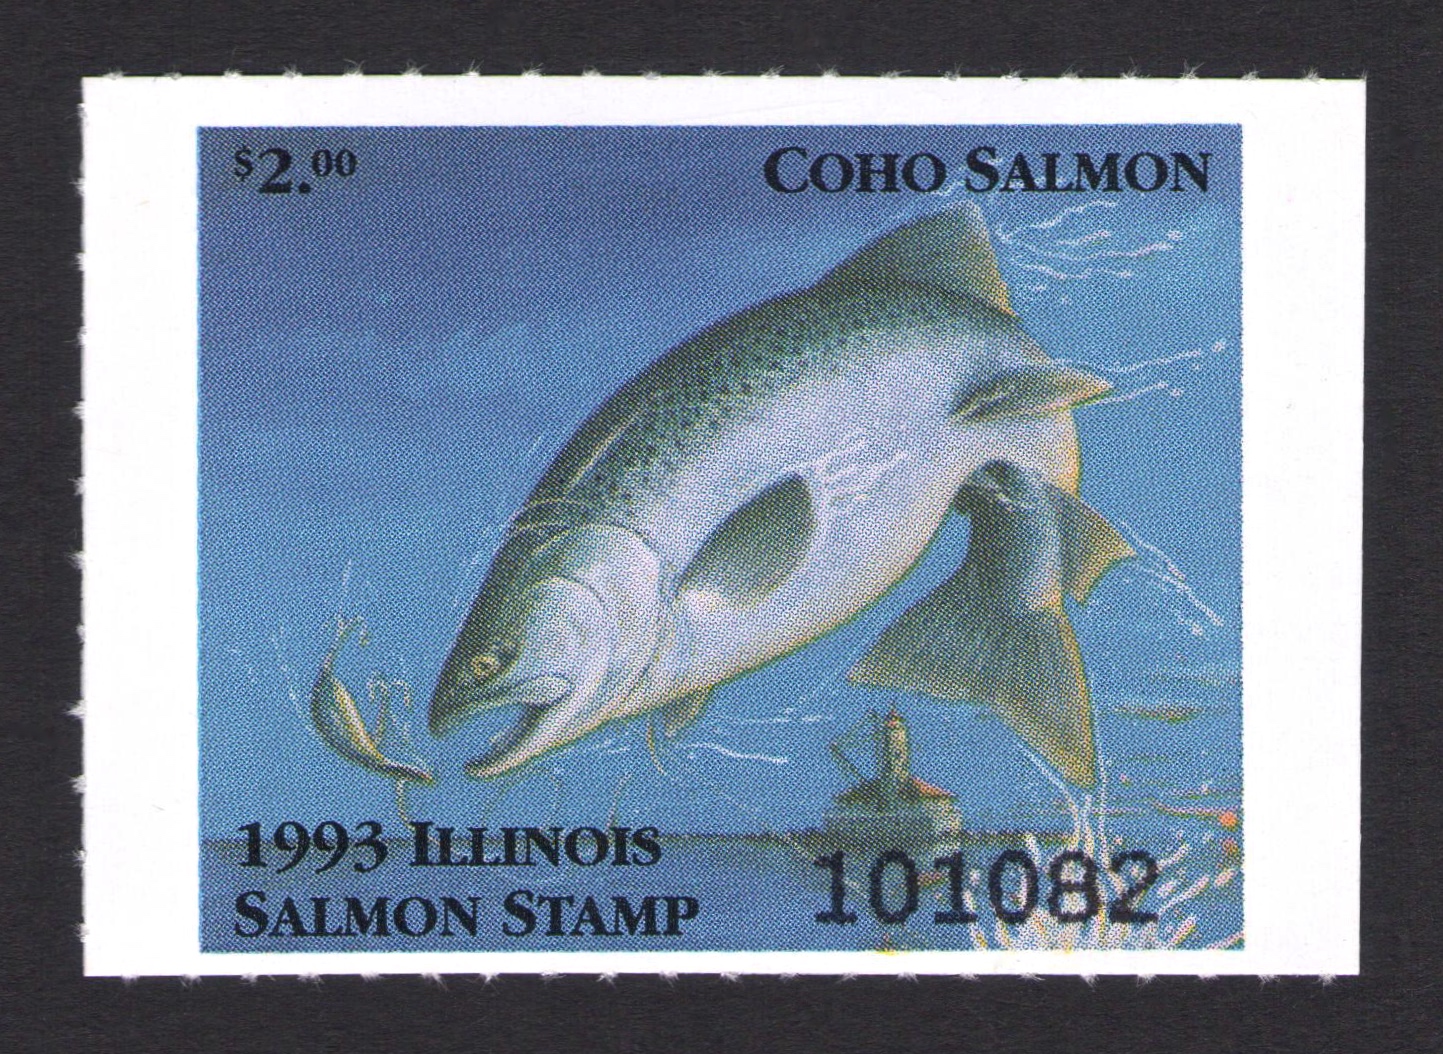 1993 Illinois Salmon